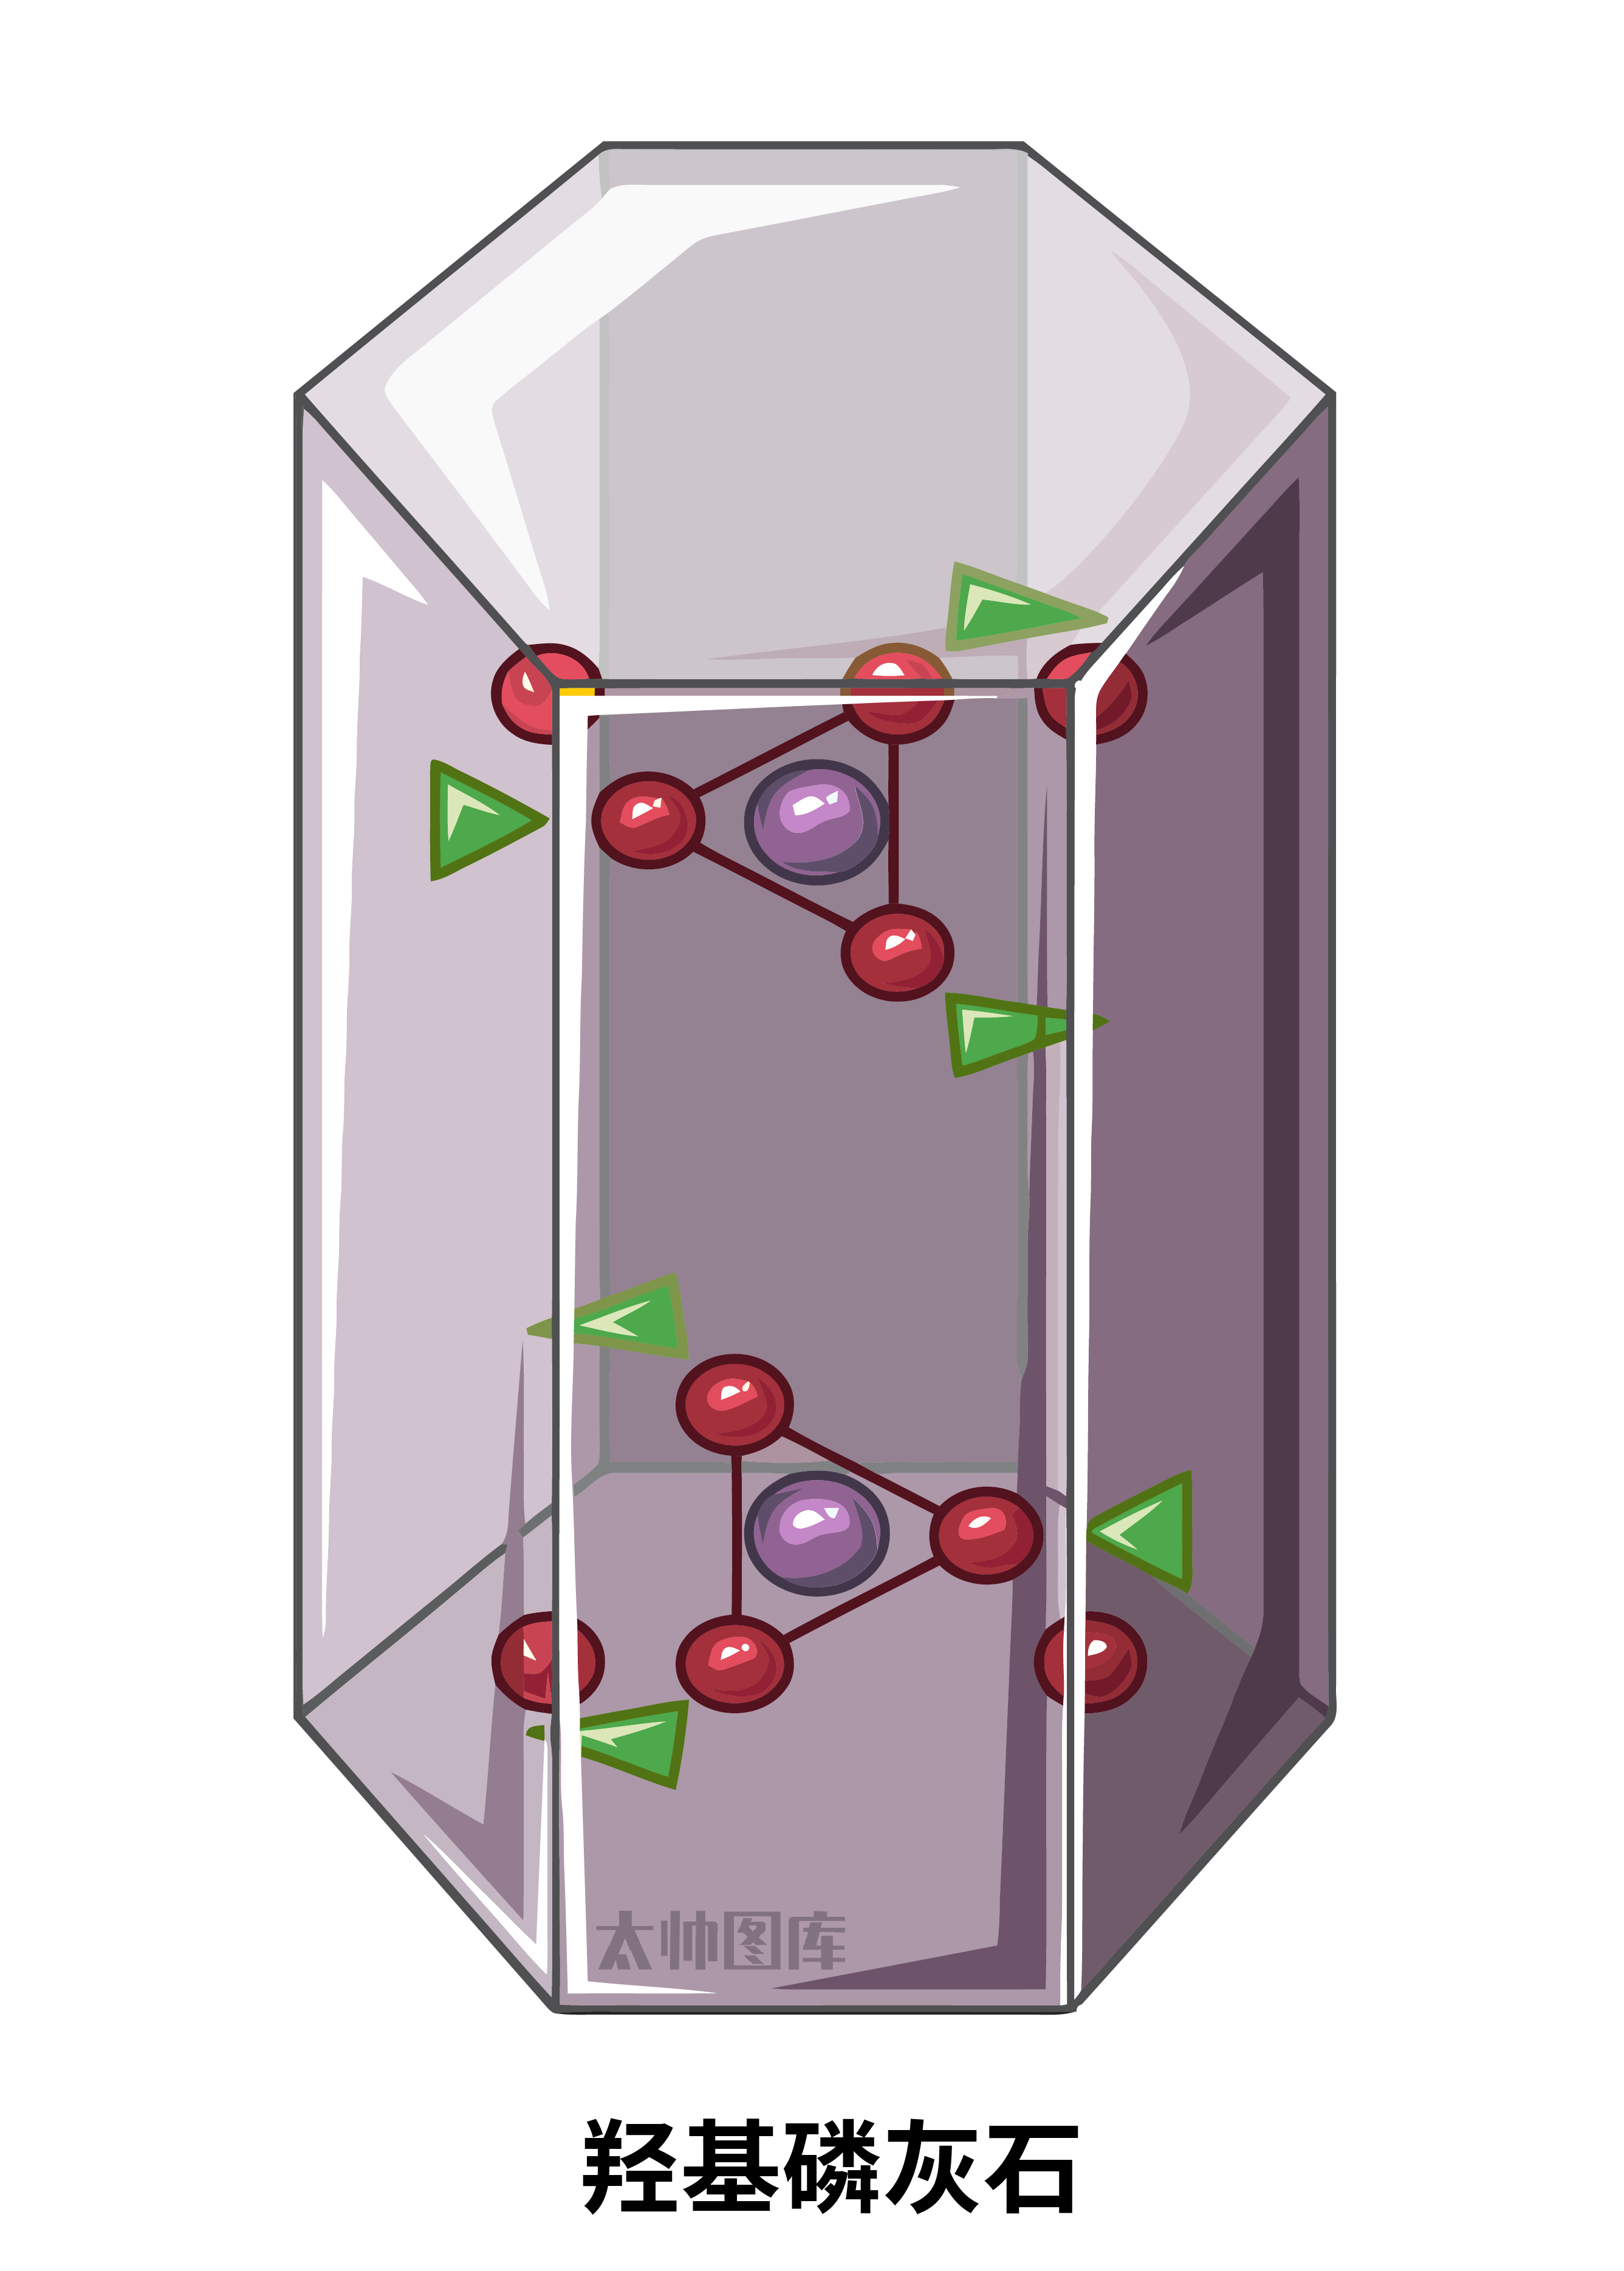 简版羟磷灰石碱式磷酸钙hap六方晶系结构羟基磷灰石化学结构